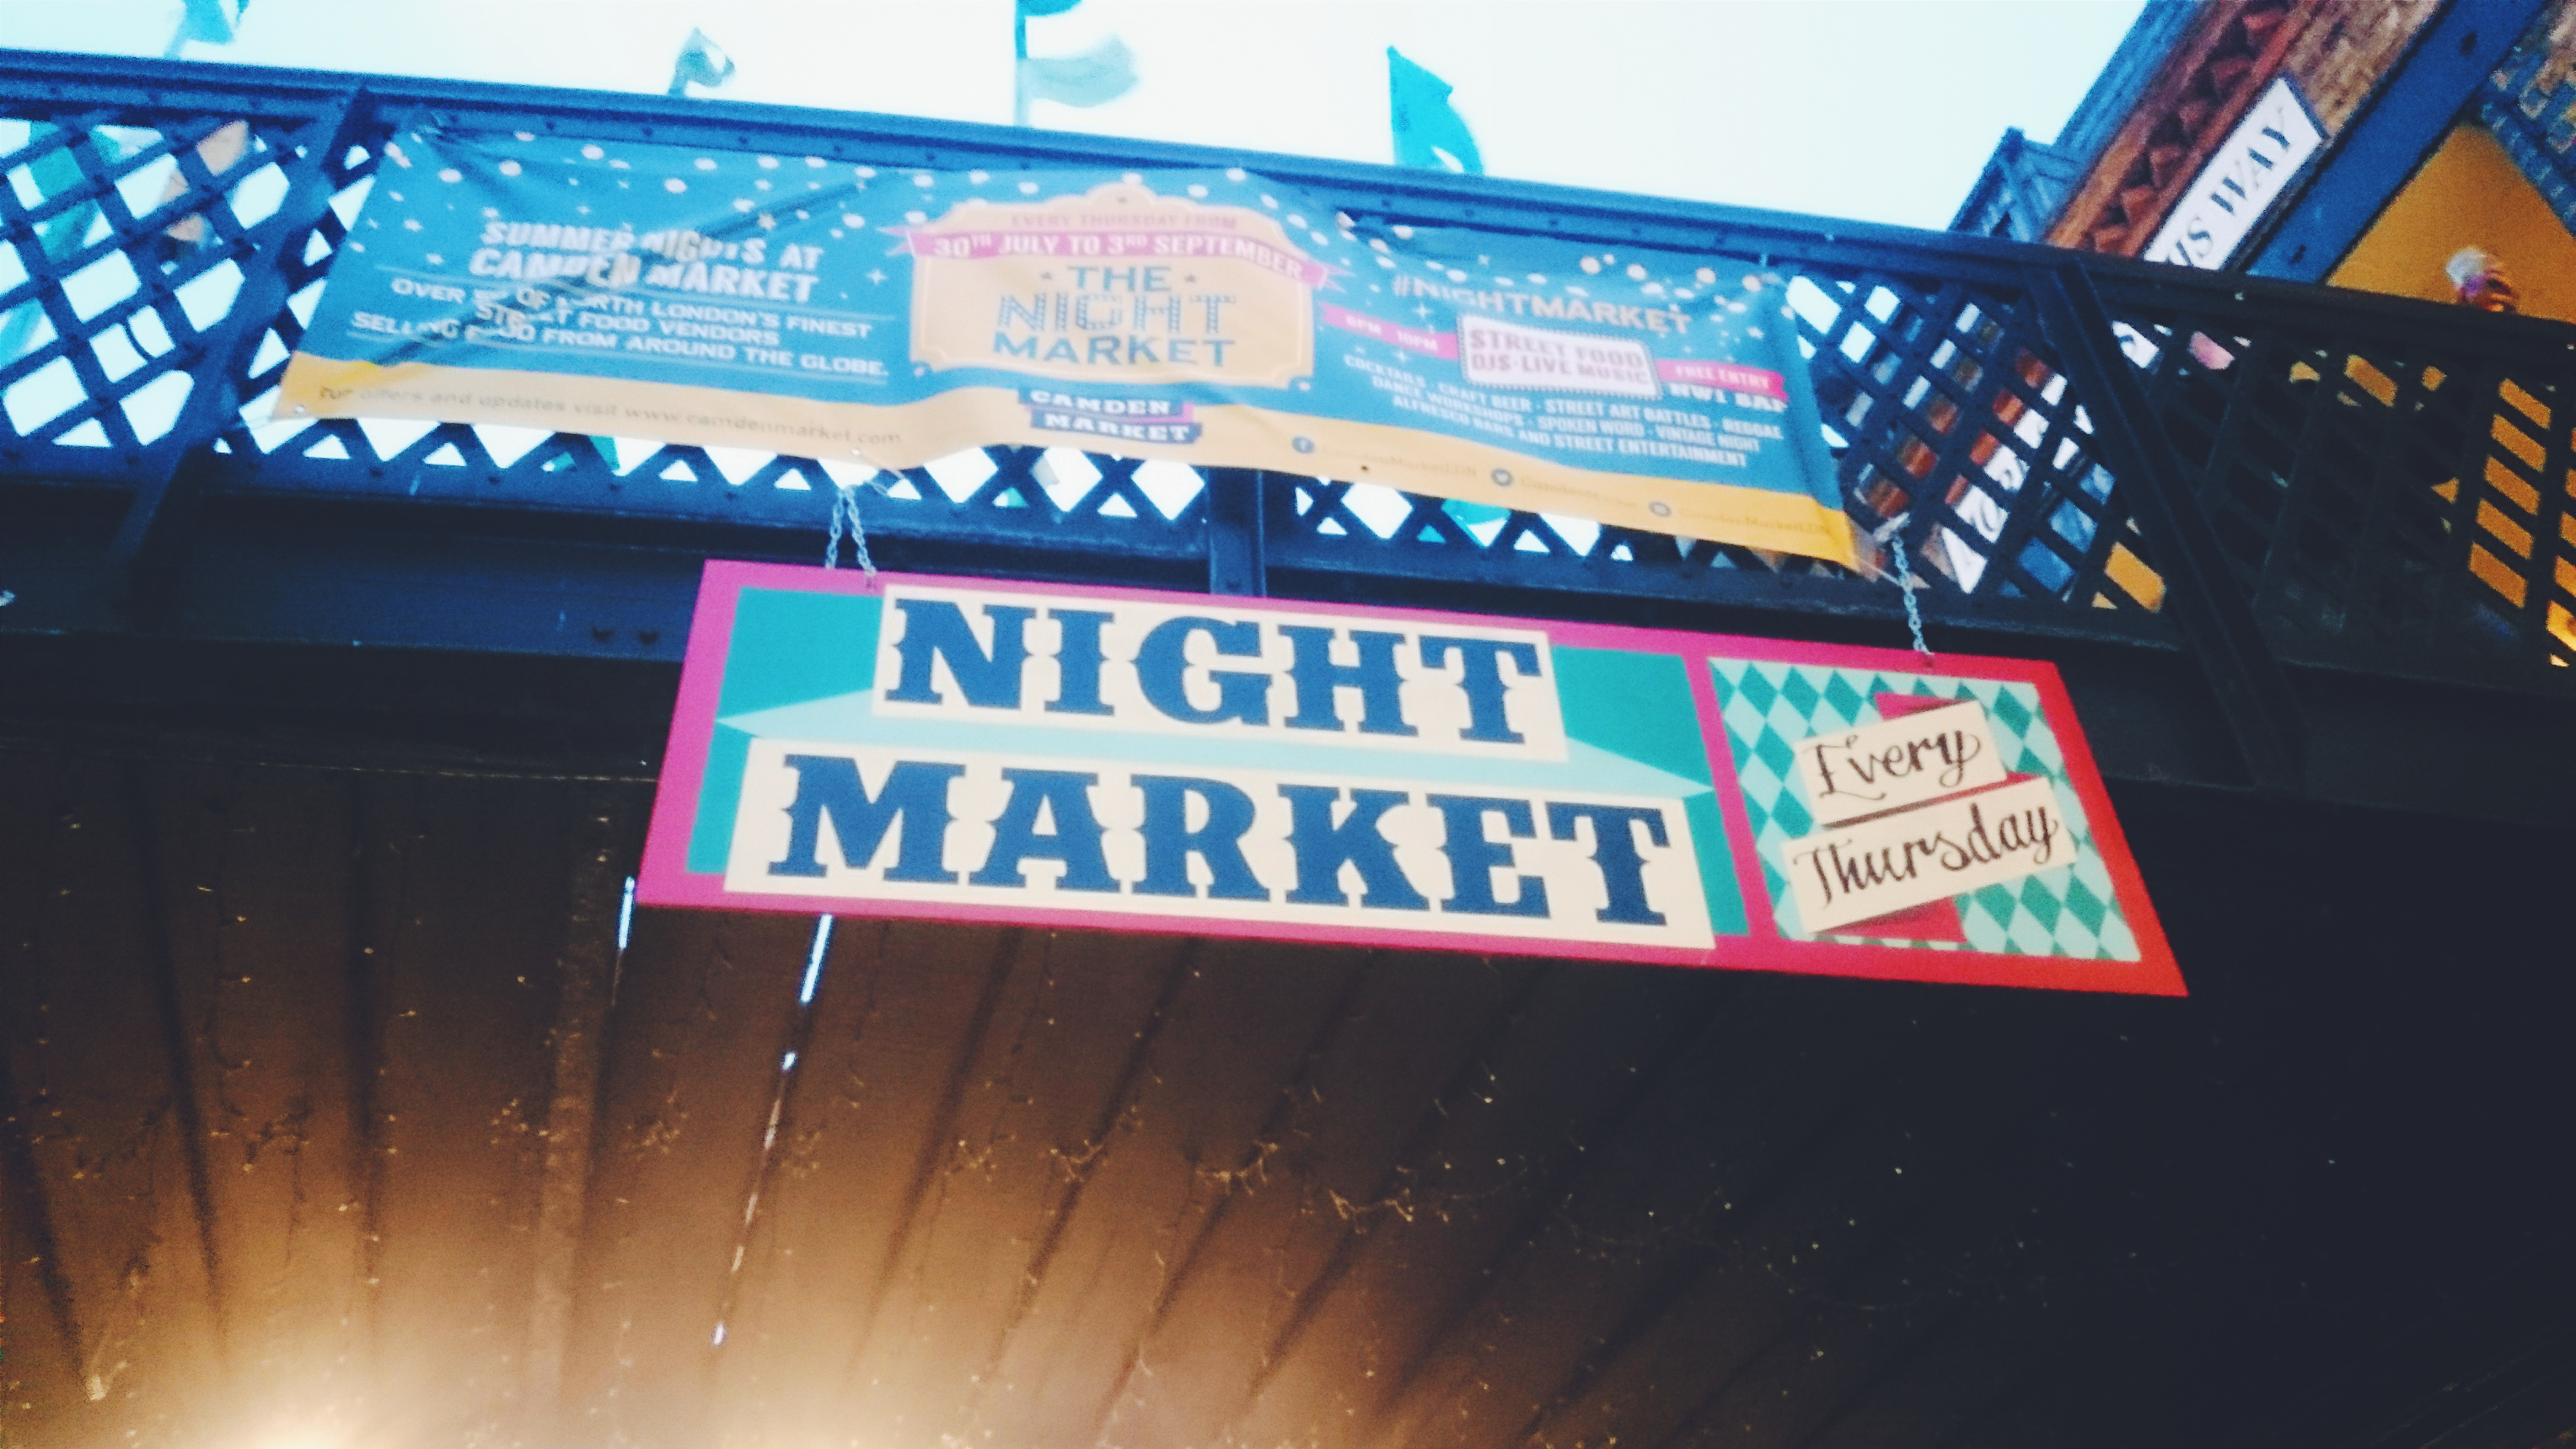 Camden Night Market